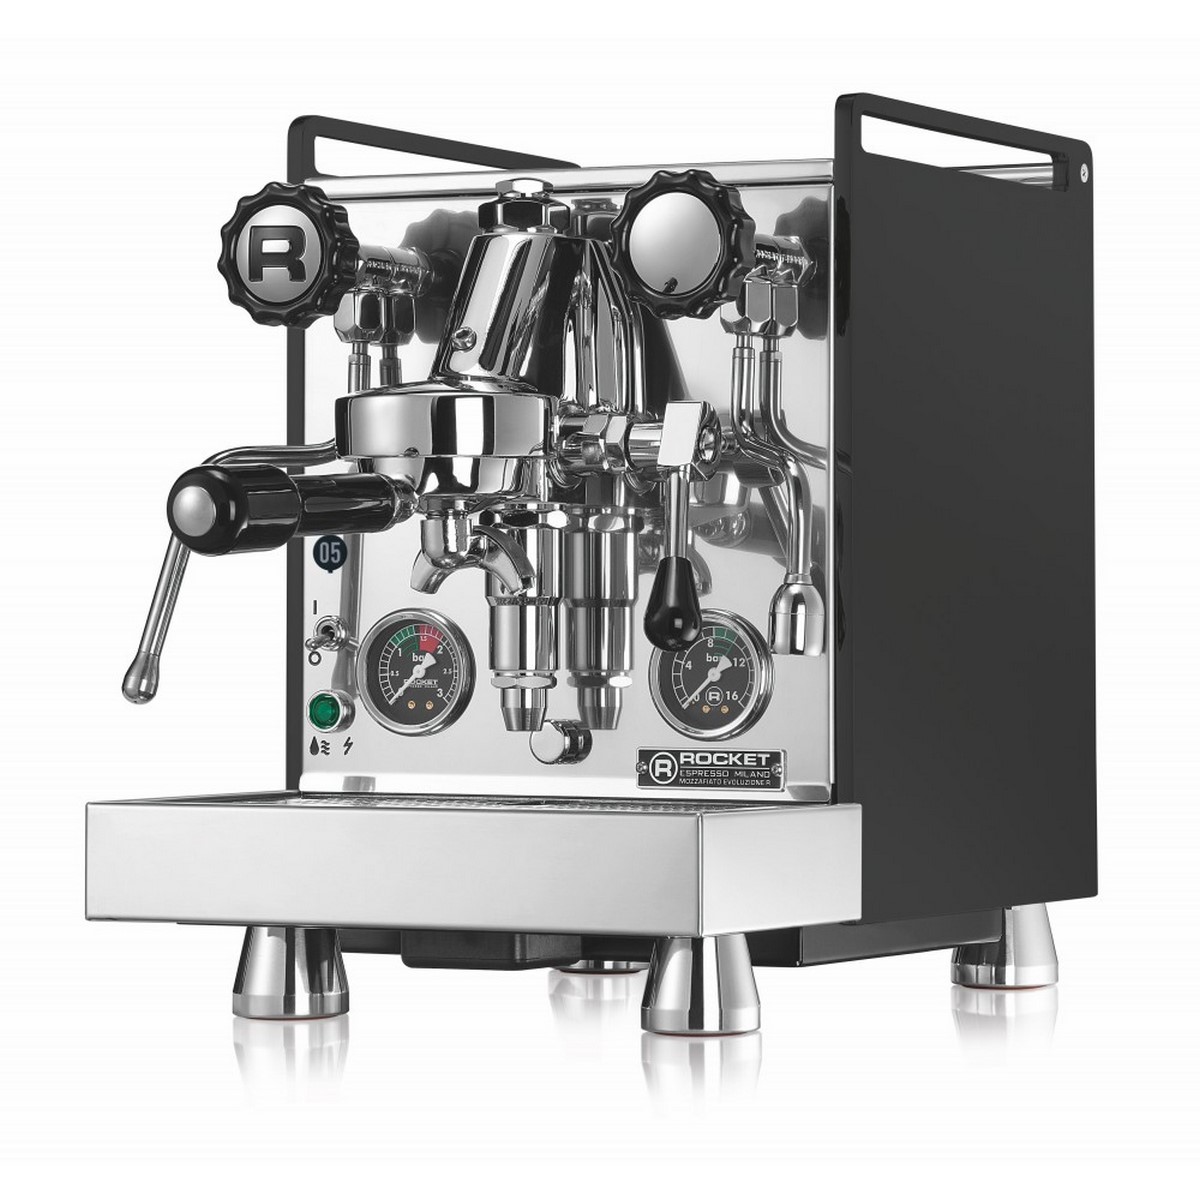 Acquista online Macchina da caffè Rocket Espresso MOZZAFIATO CRONOMETRO R Nera